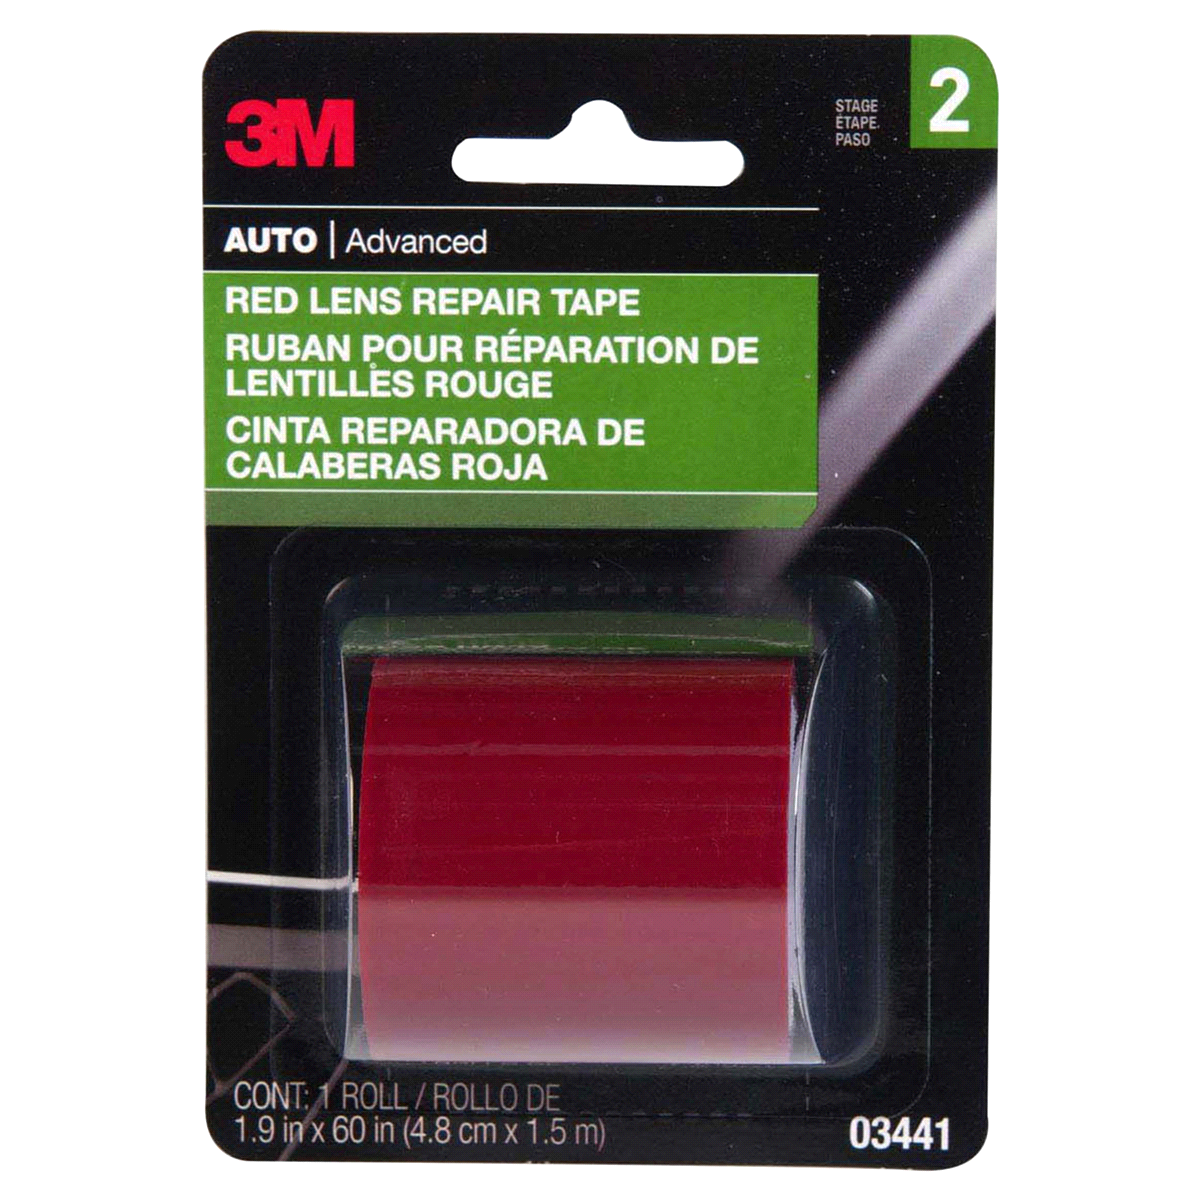 slide 1 of 3, 3M Red Lens Repair Tape, 1 ct